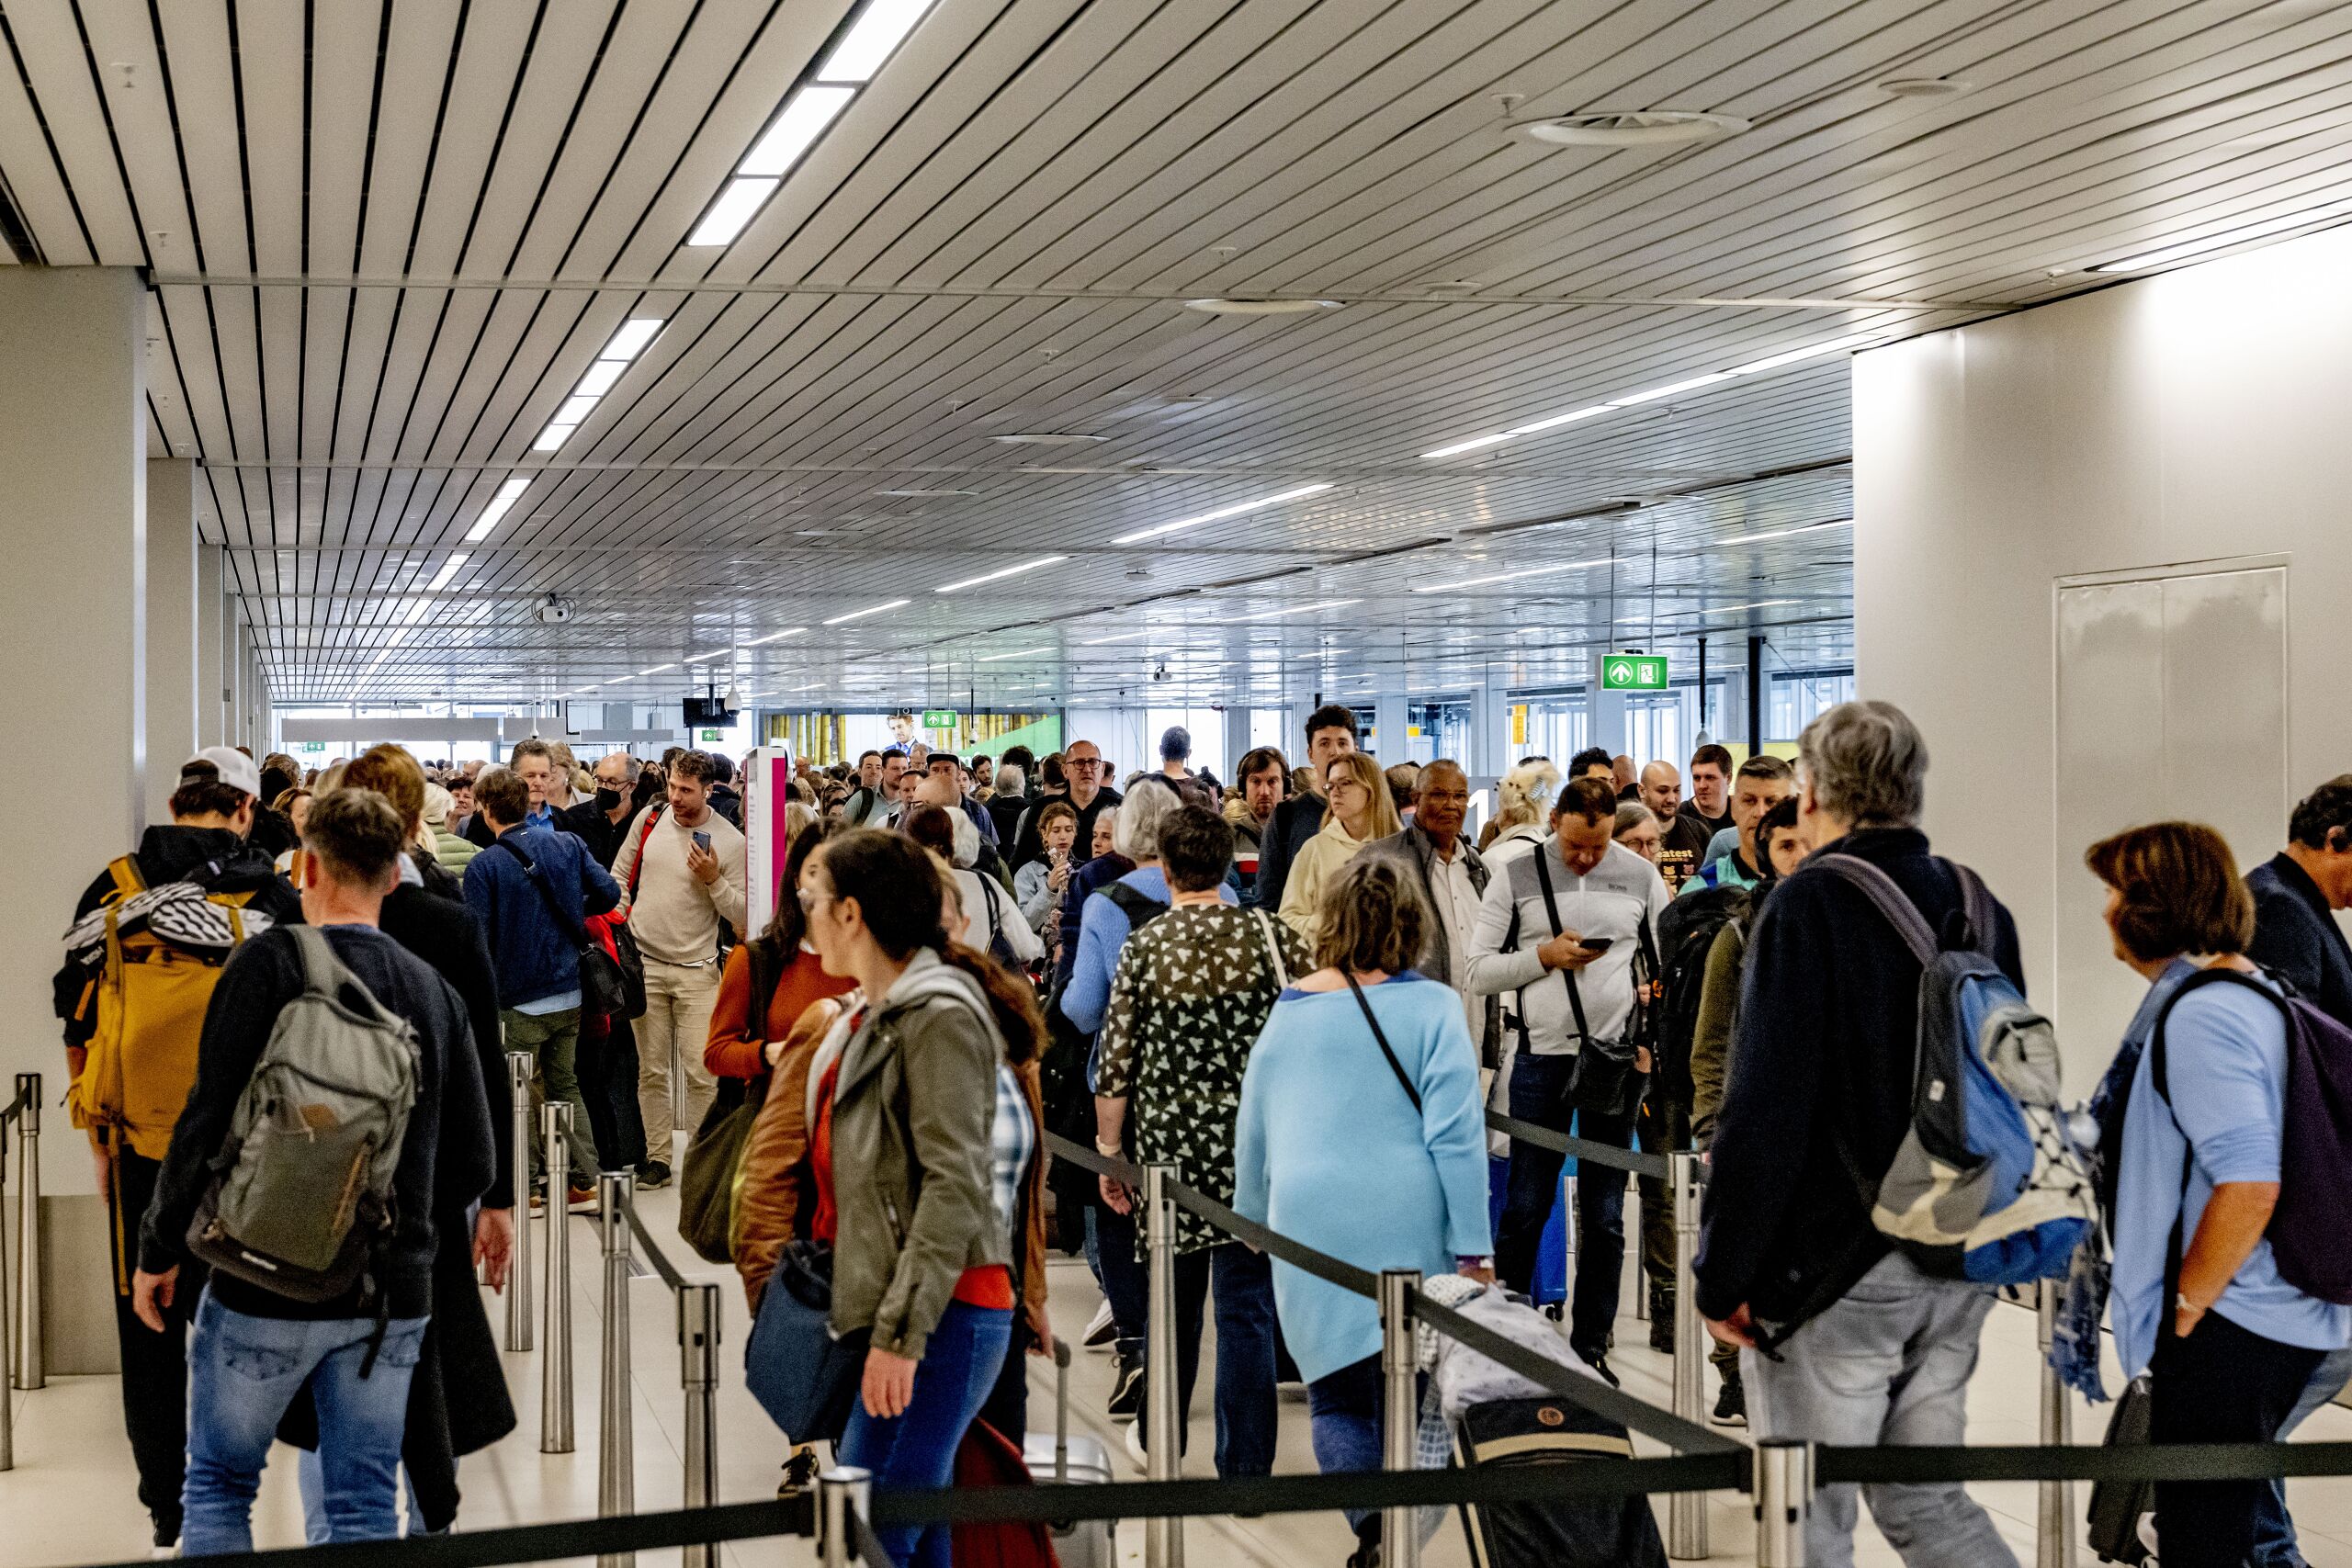 Reizigers staan te wachten in lange rijen om te vliegen vanaf Schiphol. De luchthaven waarschuwt inmiddels onomwonden dat het de komende weken tot urenlange rijen kan komen. De komende tijd is het ongeveer net zo druk als tijdens de meivakantie.